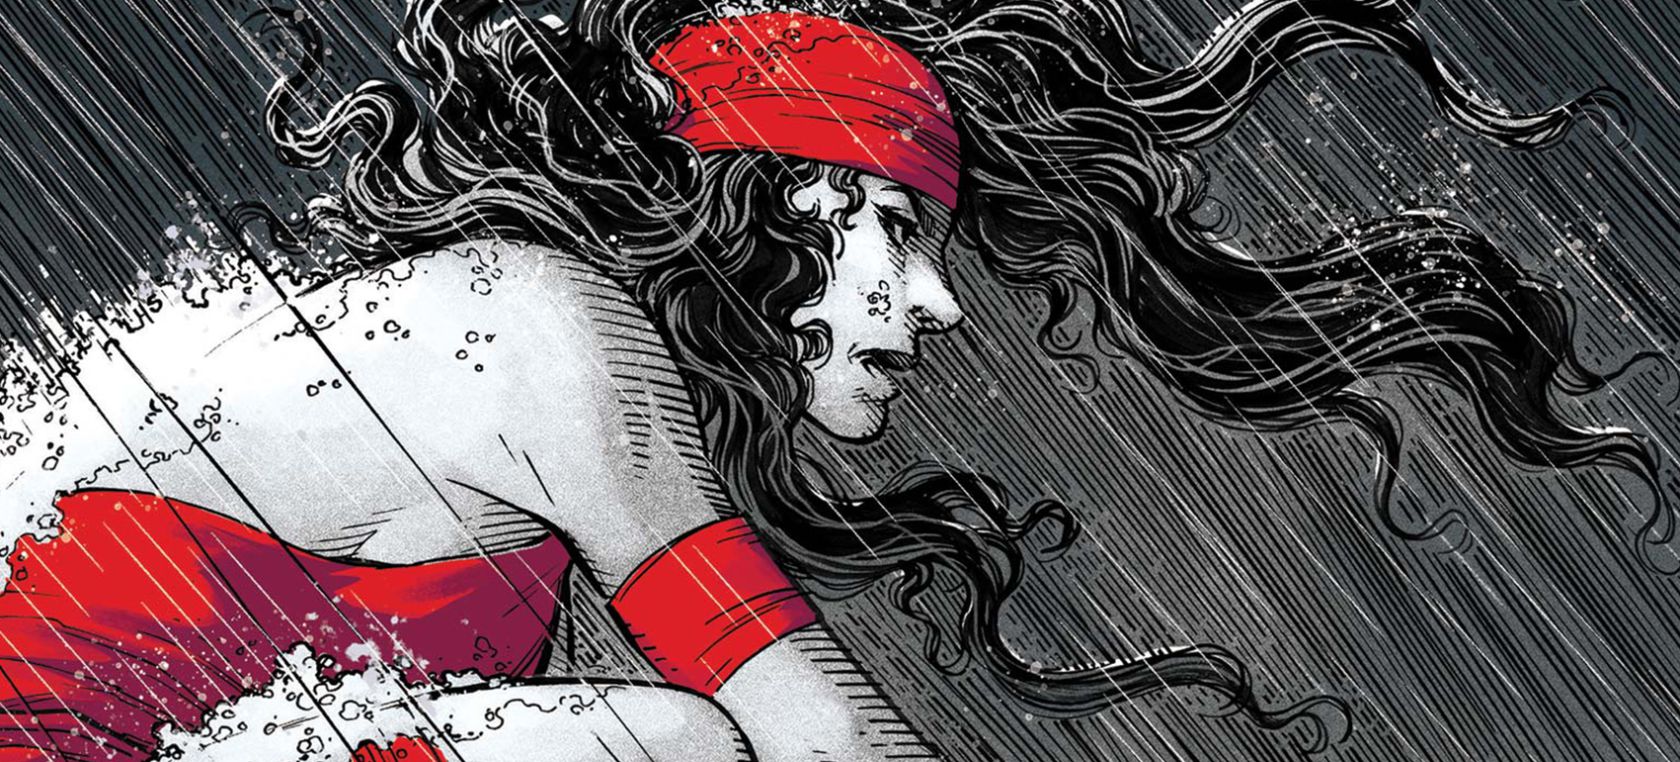 Elektra se apunta al tratamiento Marvel: Blanco, Negro y Sangre